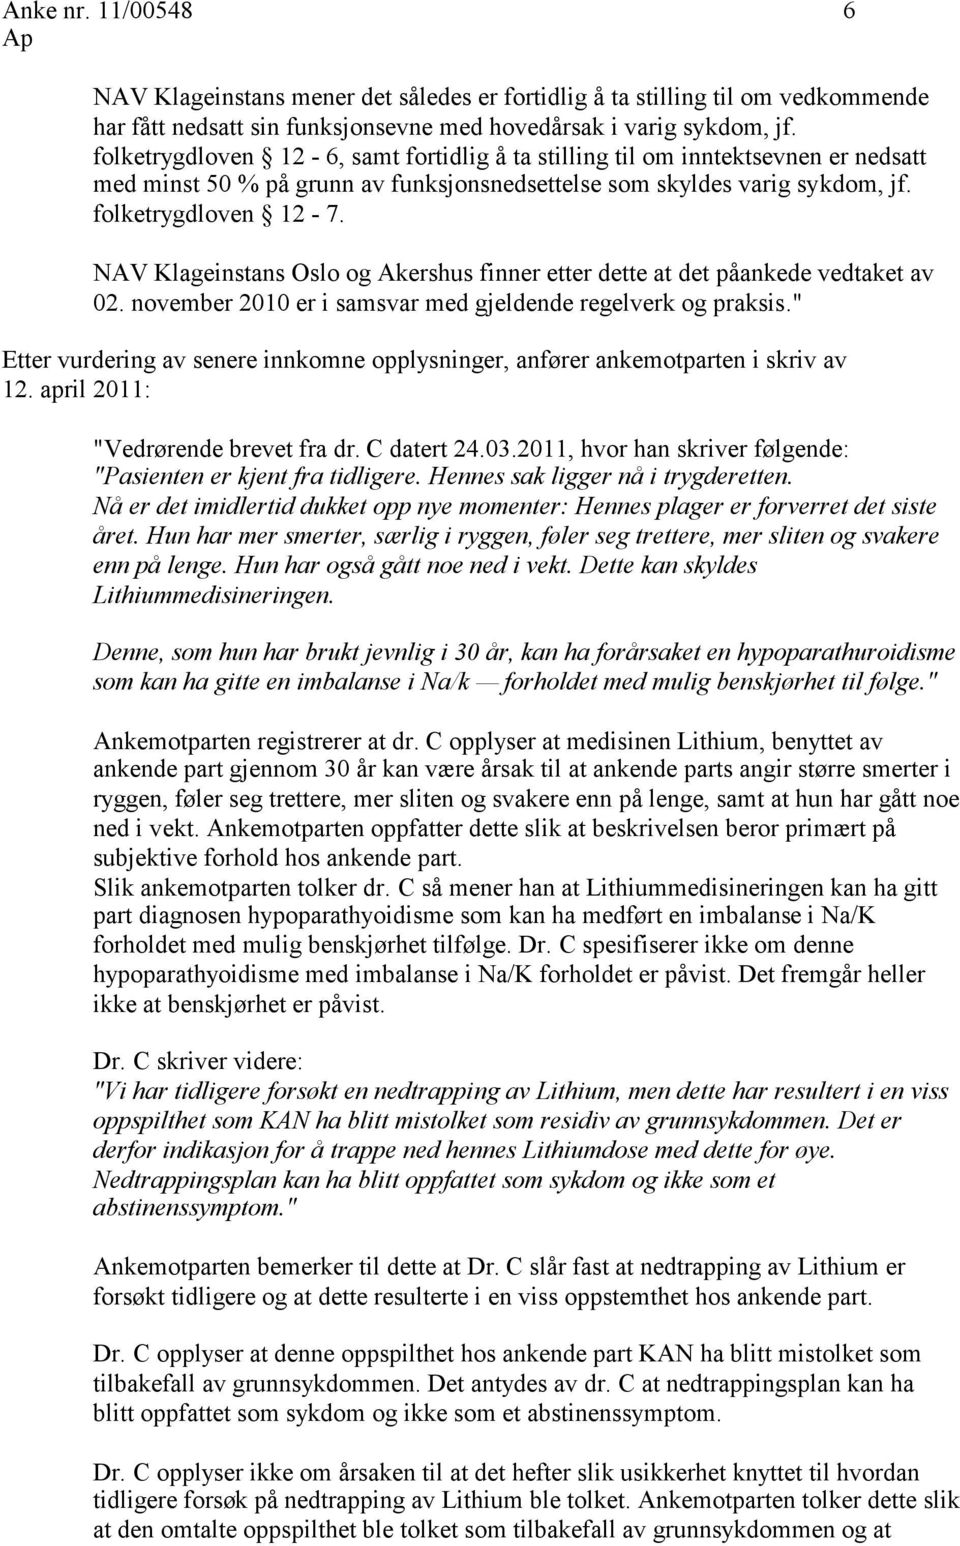 NAV Klageinstans Oslo og Akershus finner etter dette at det påankede vedtaket av 02. november 2010 er i samsvar med gjeldende regelverk og praksis.